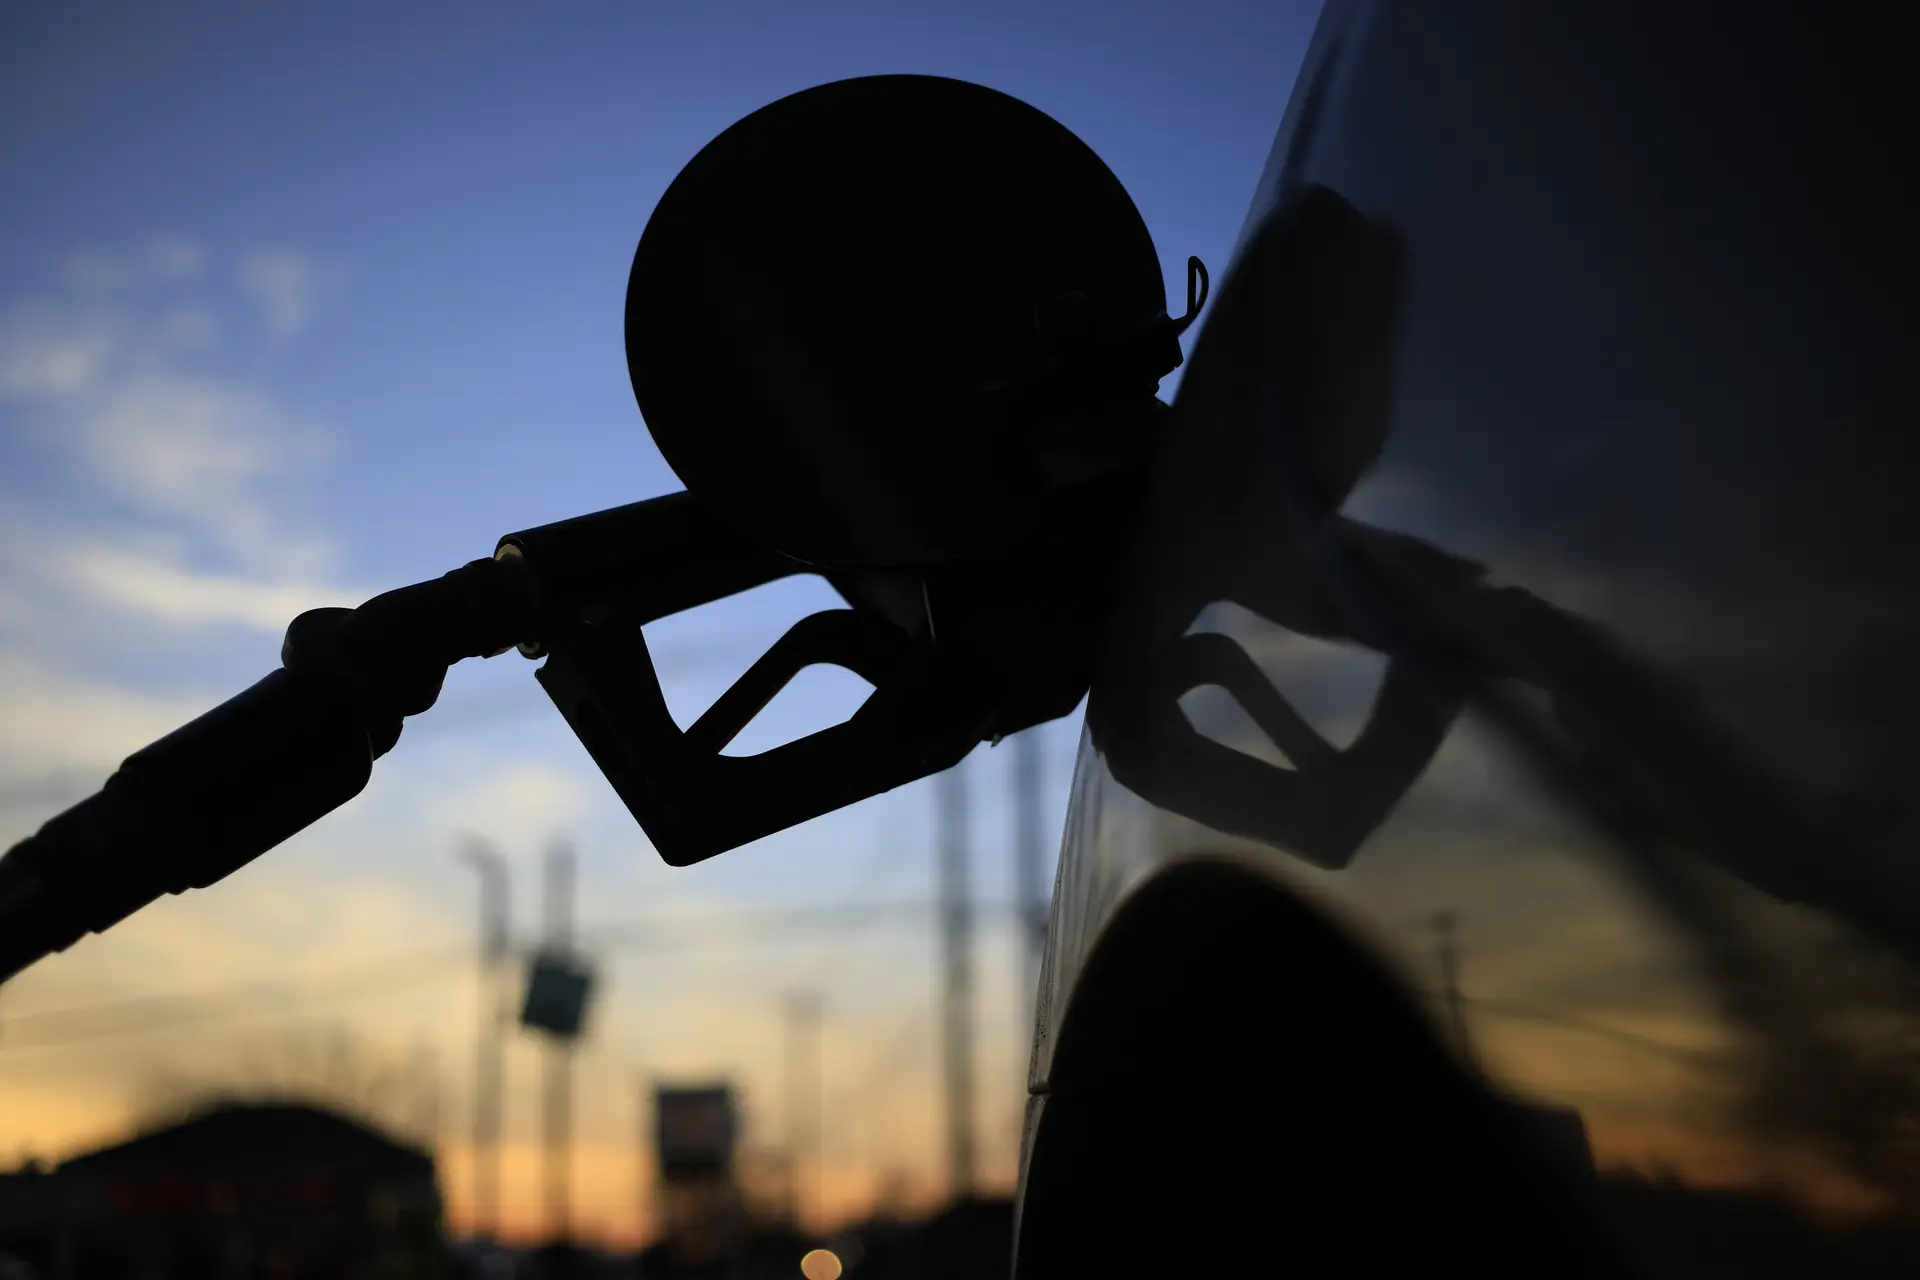 Gasolina em Portugal mais cara que a média da UE, mas gasóleo foi mais barato